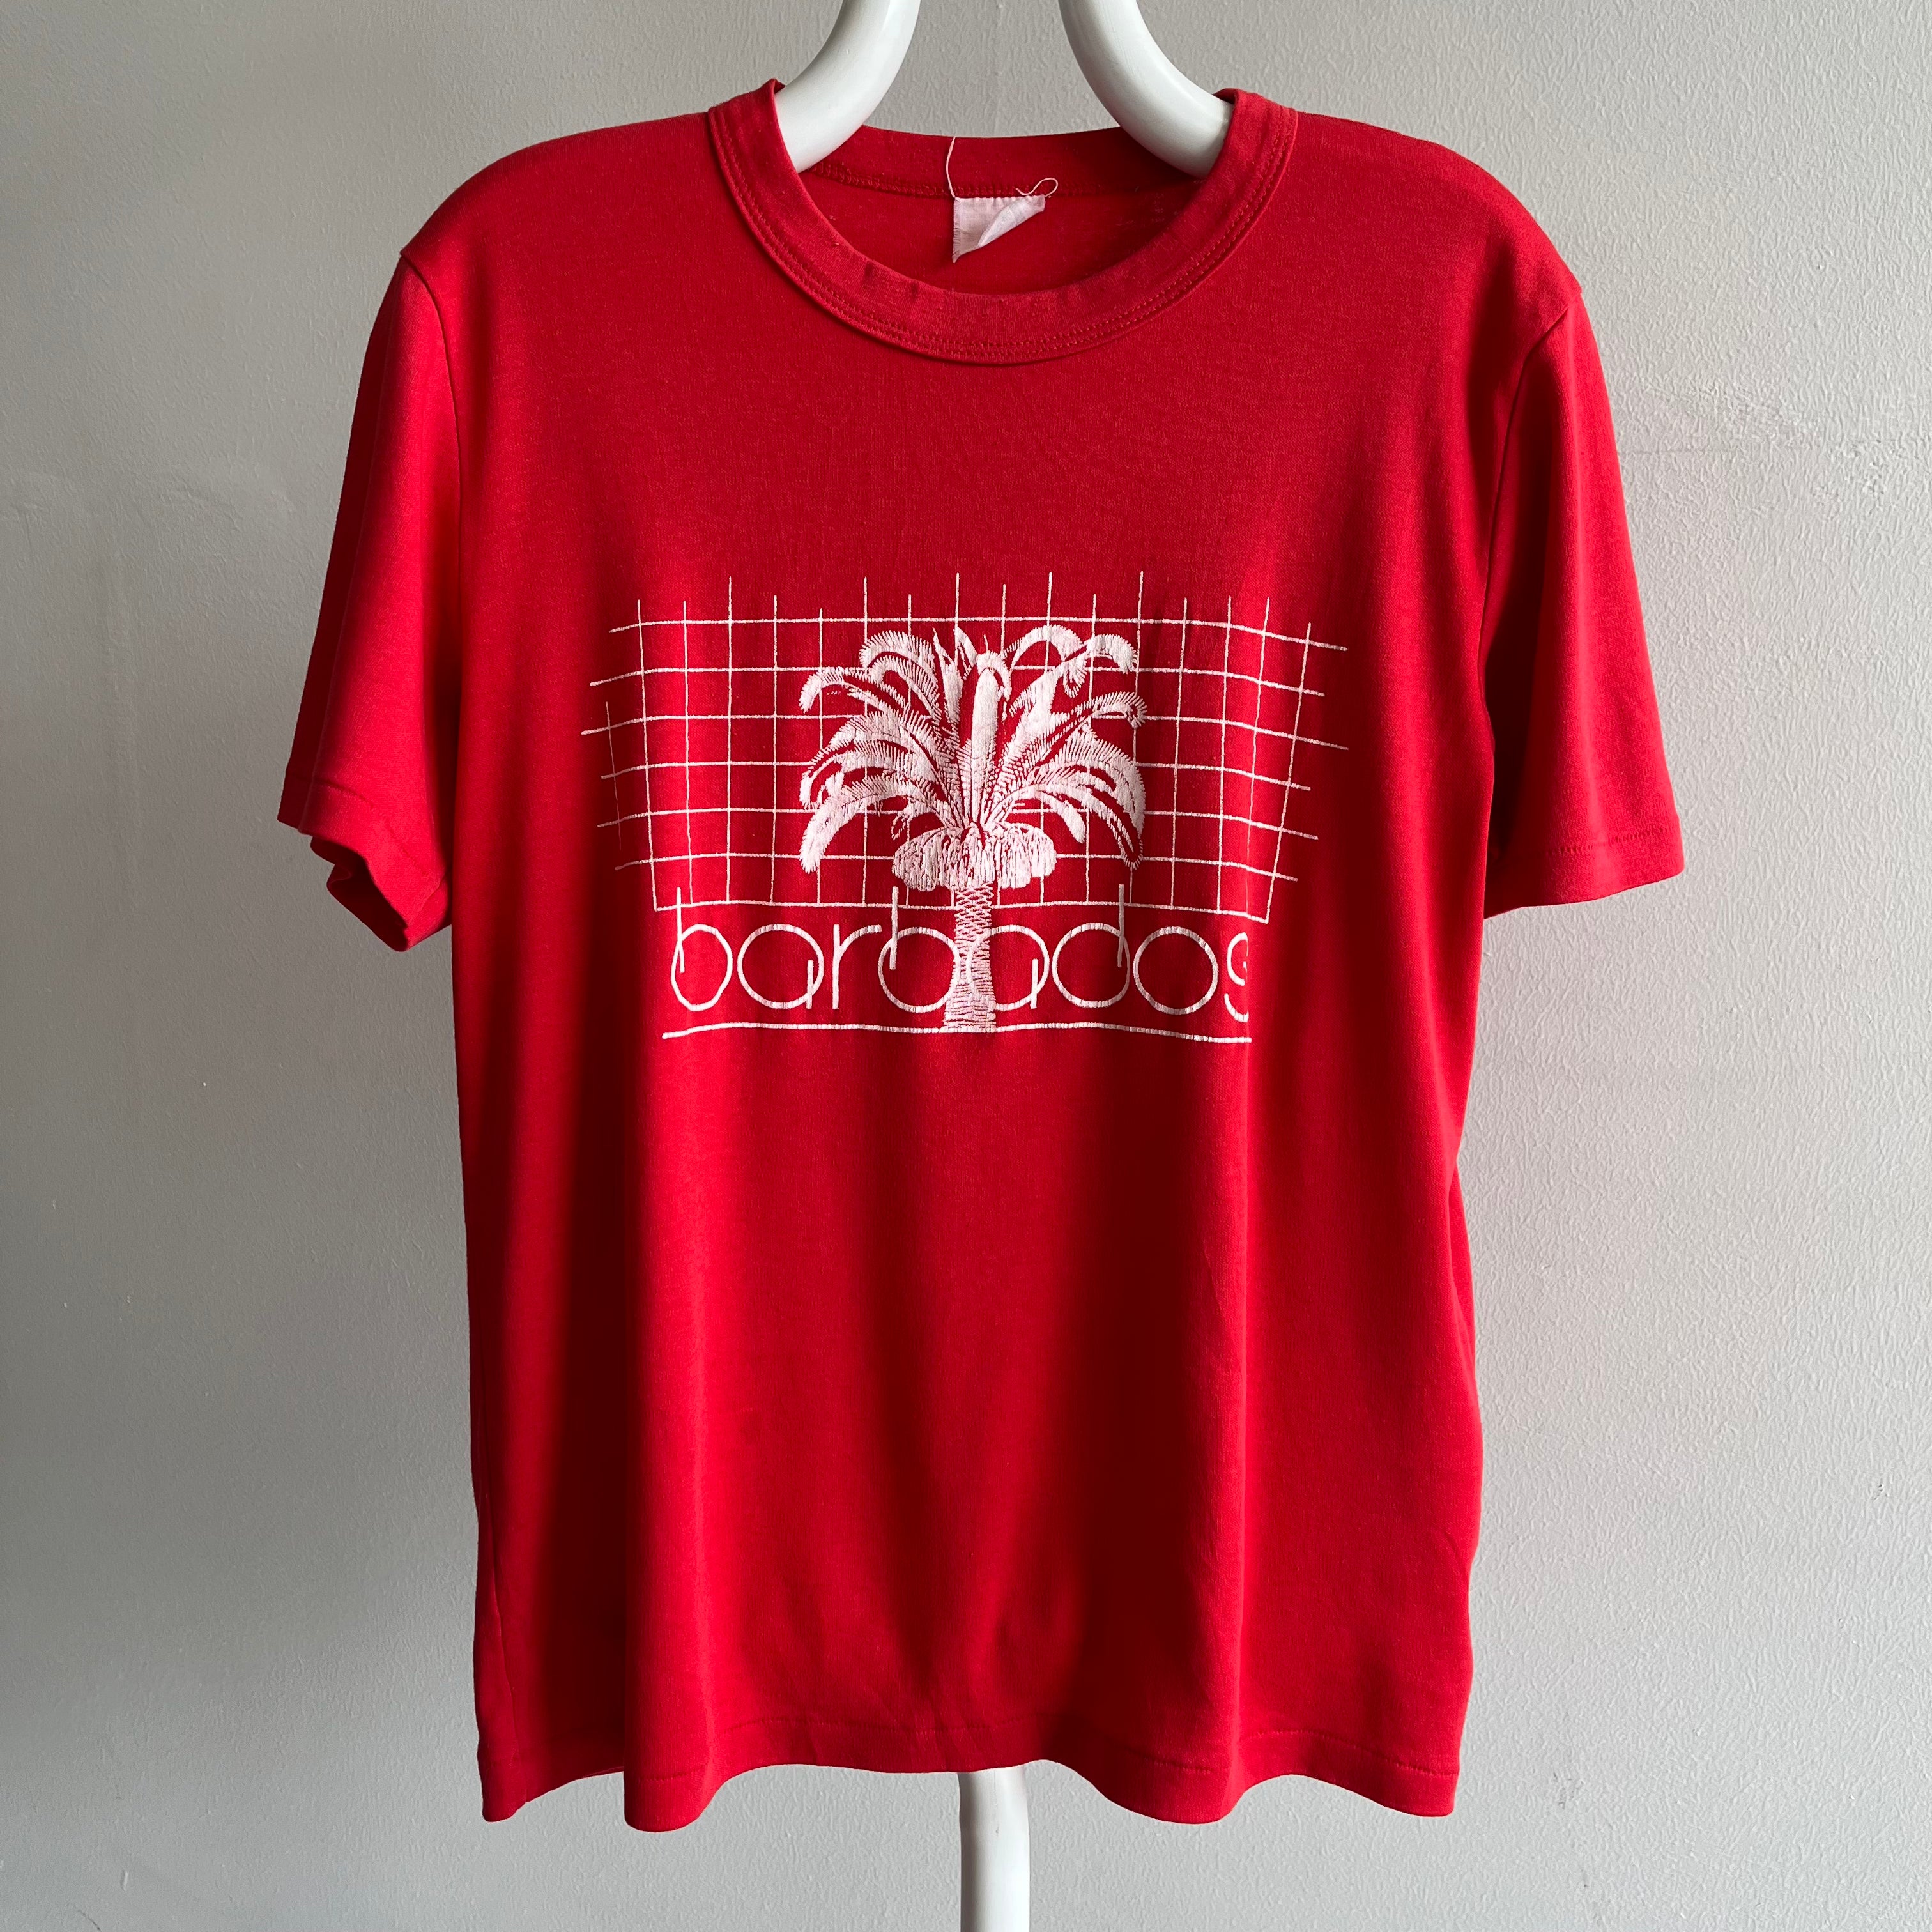 T-shirt Touristique de la Barbade des années 1980